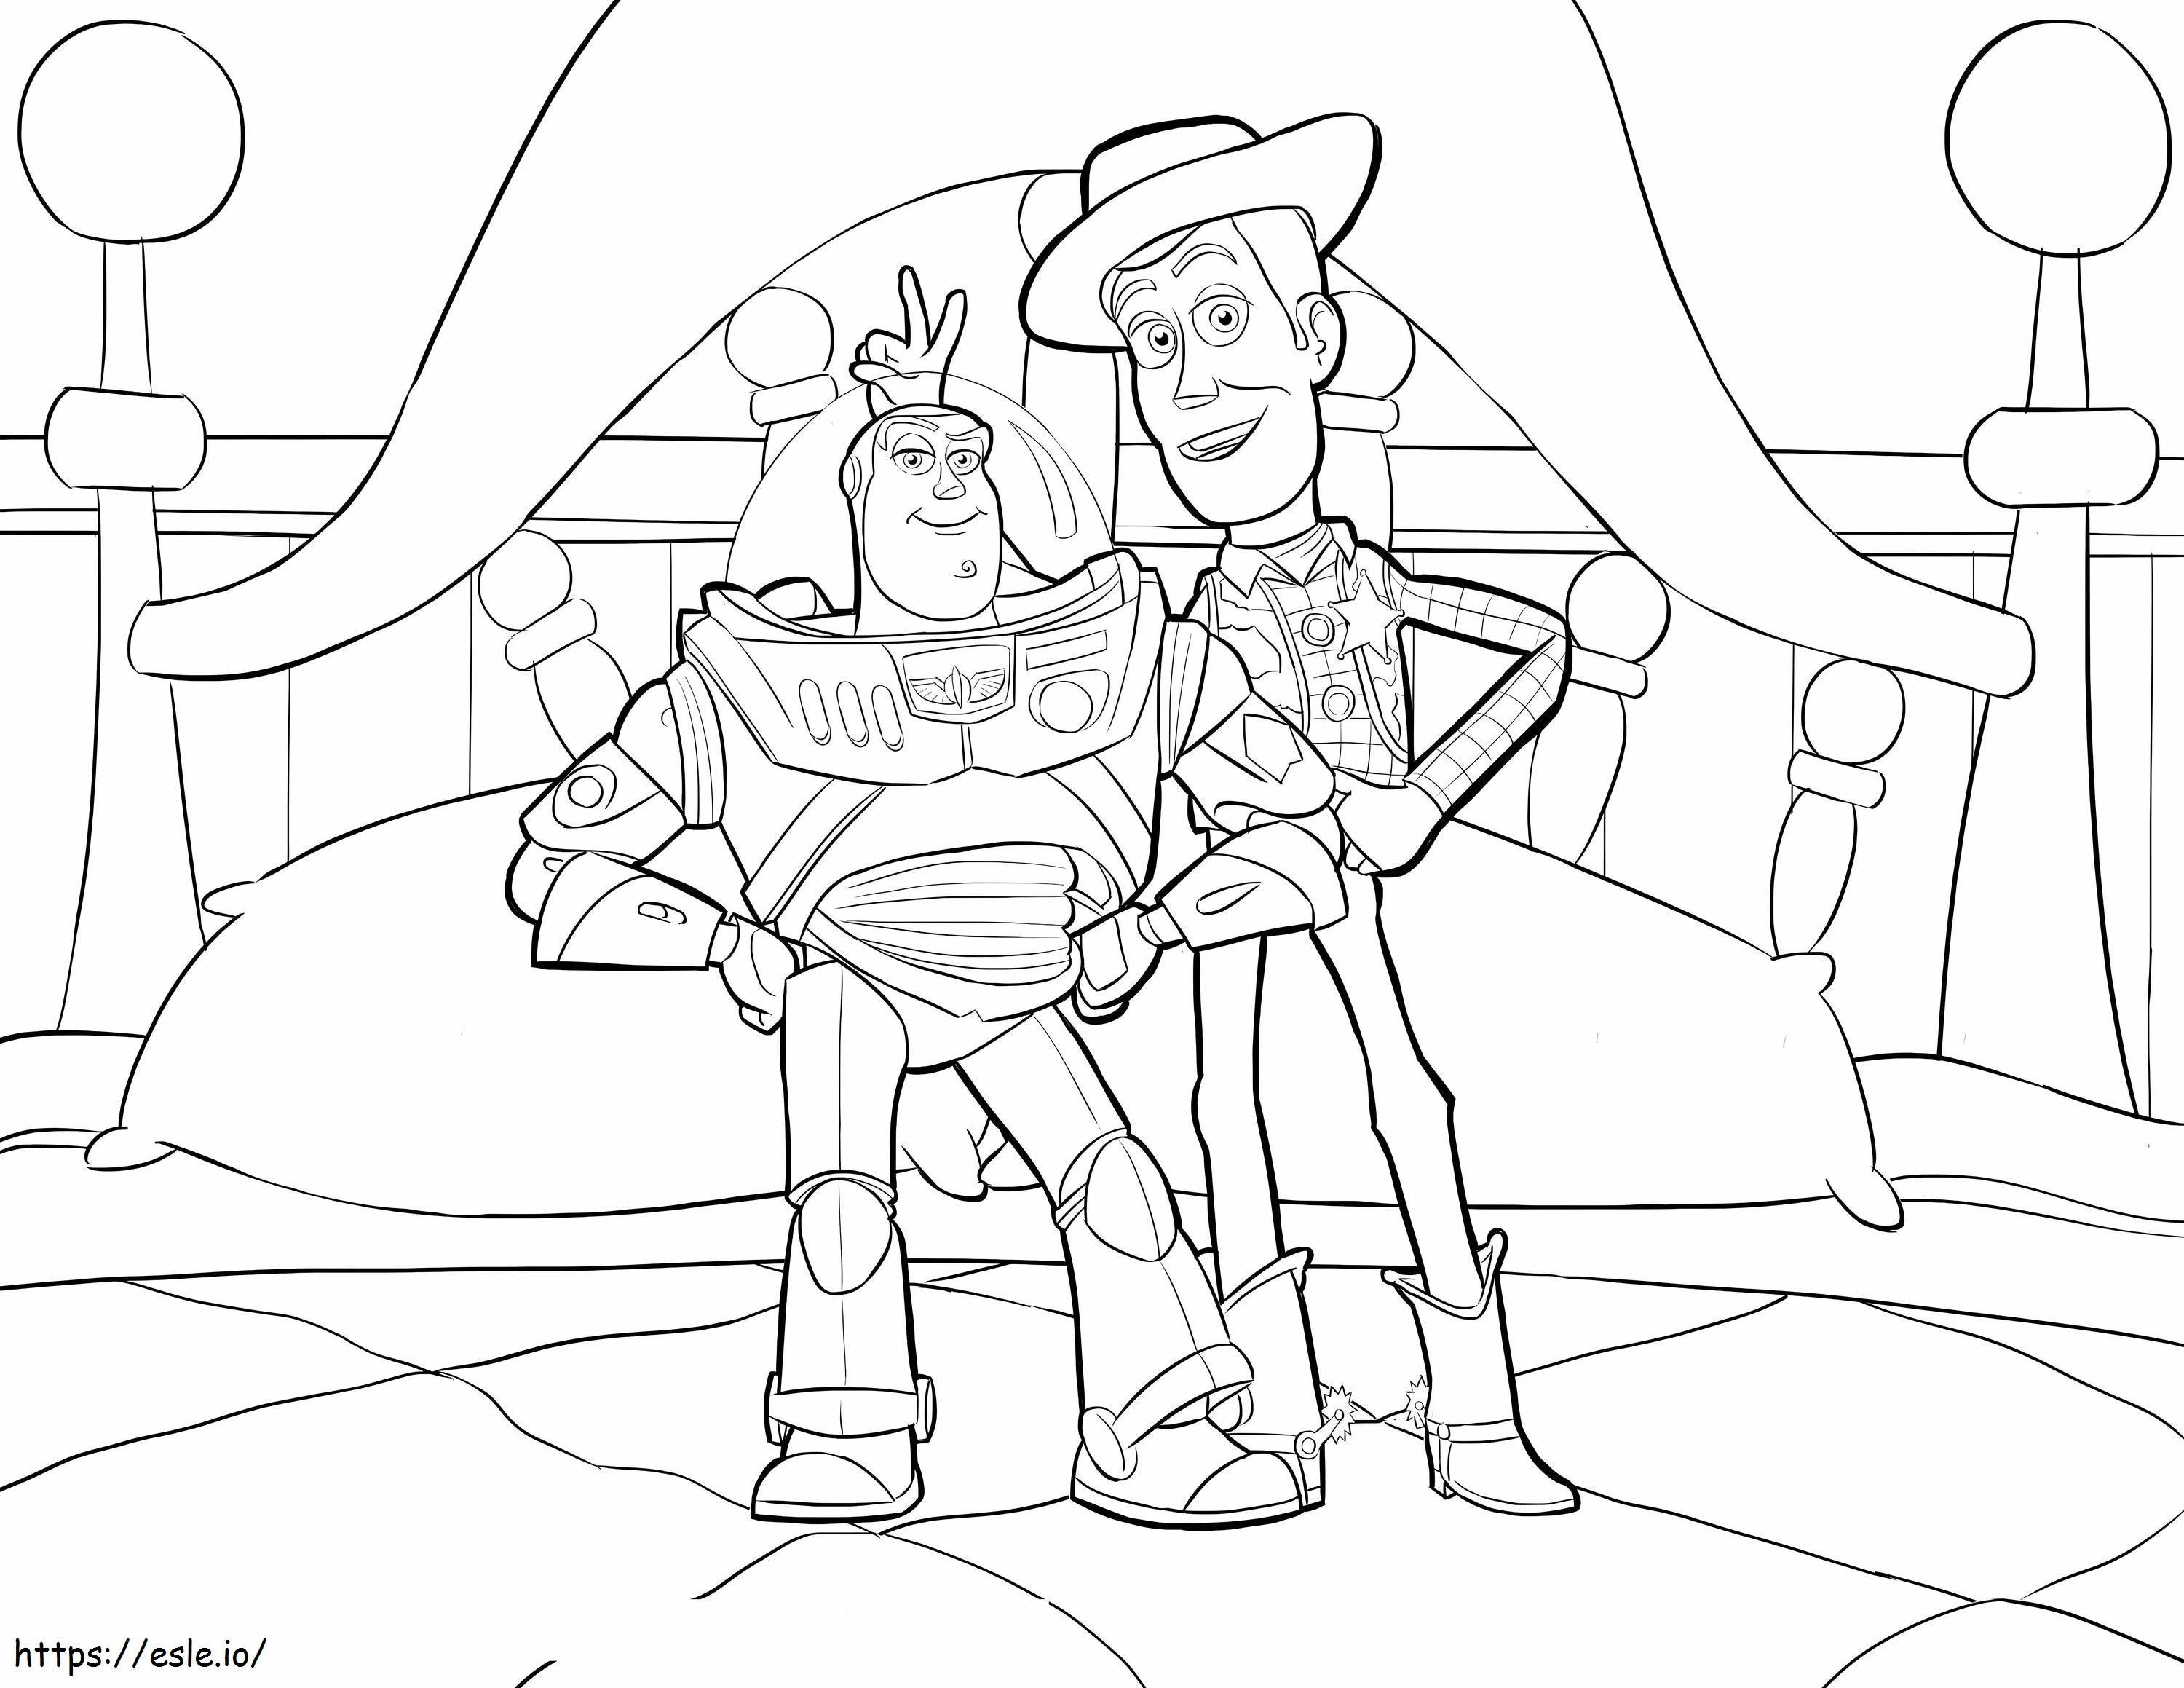 Woody und Buzz im Scaled House ausmalbilder